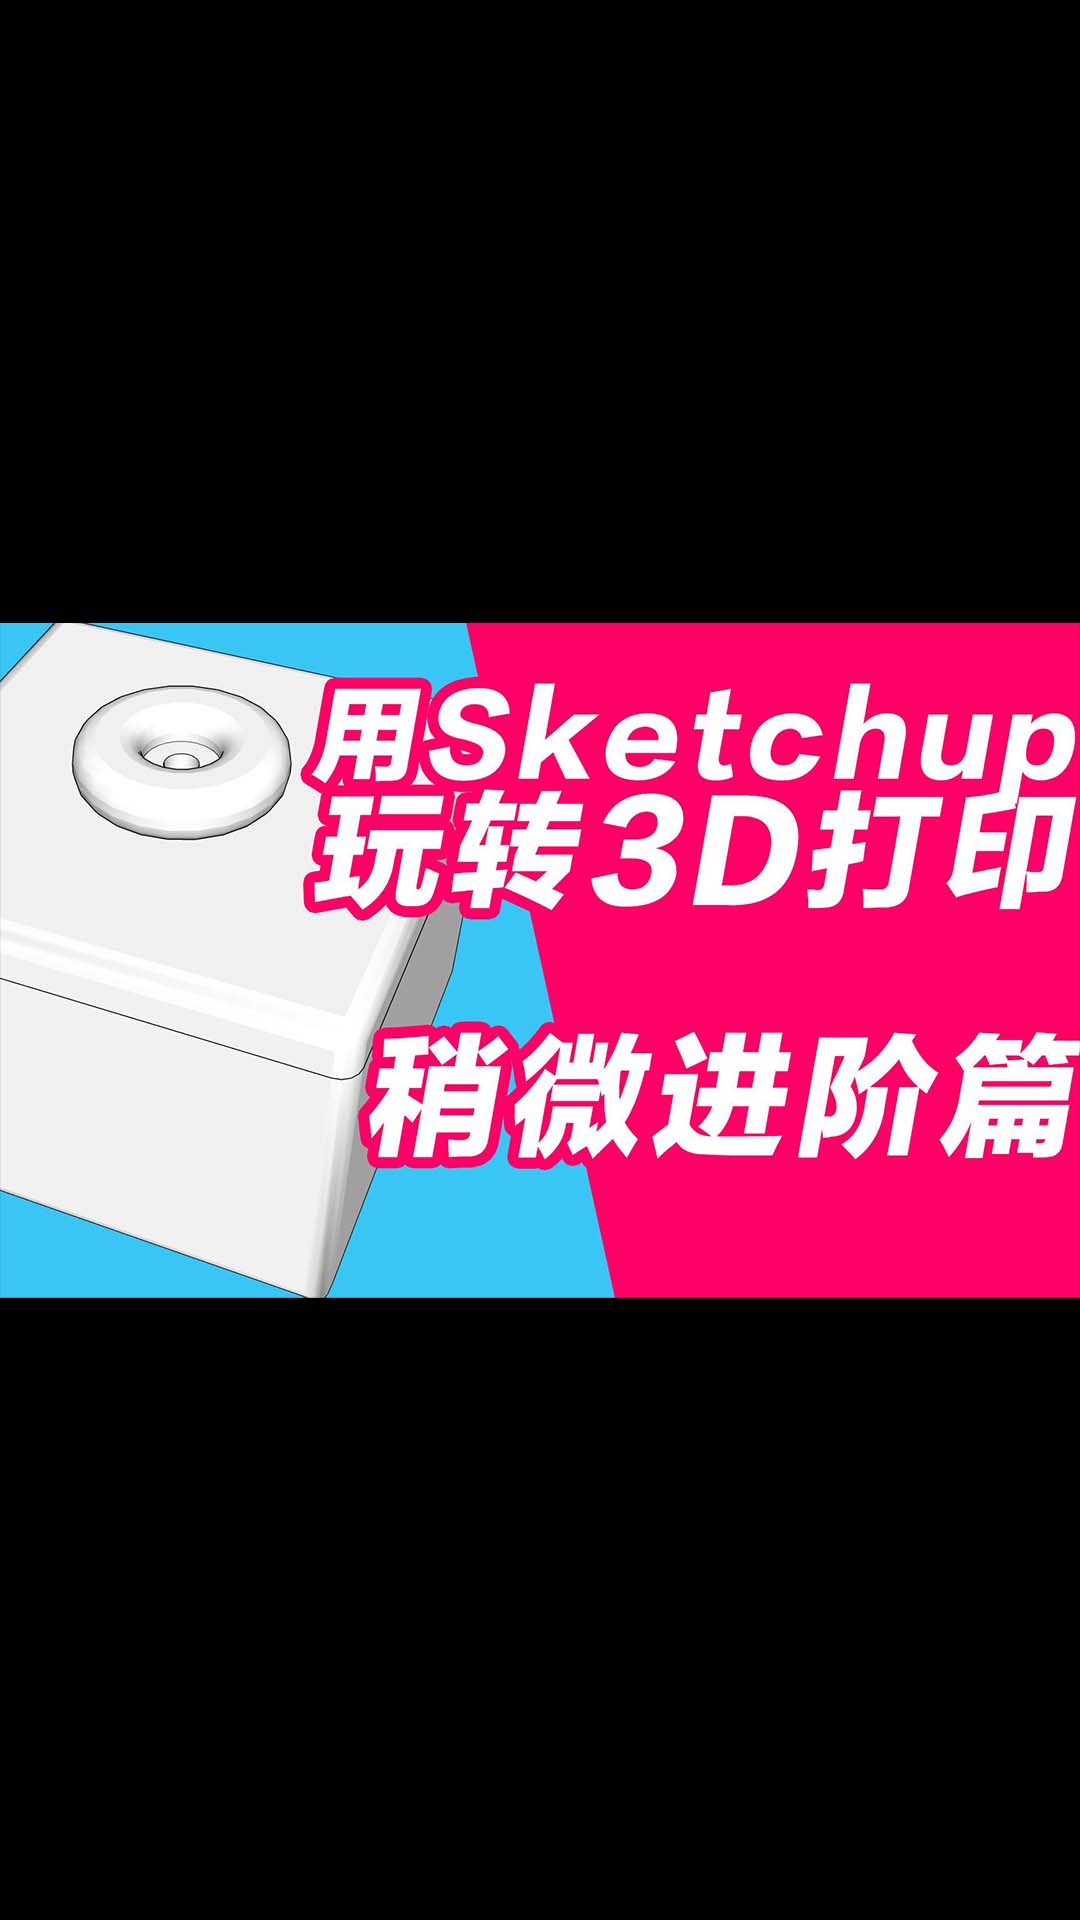 玩转3D打印机系列 用sketchup做3D打印建模 稍微进阶篇